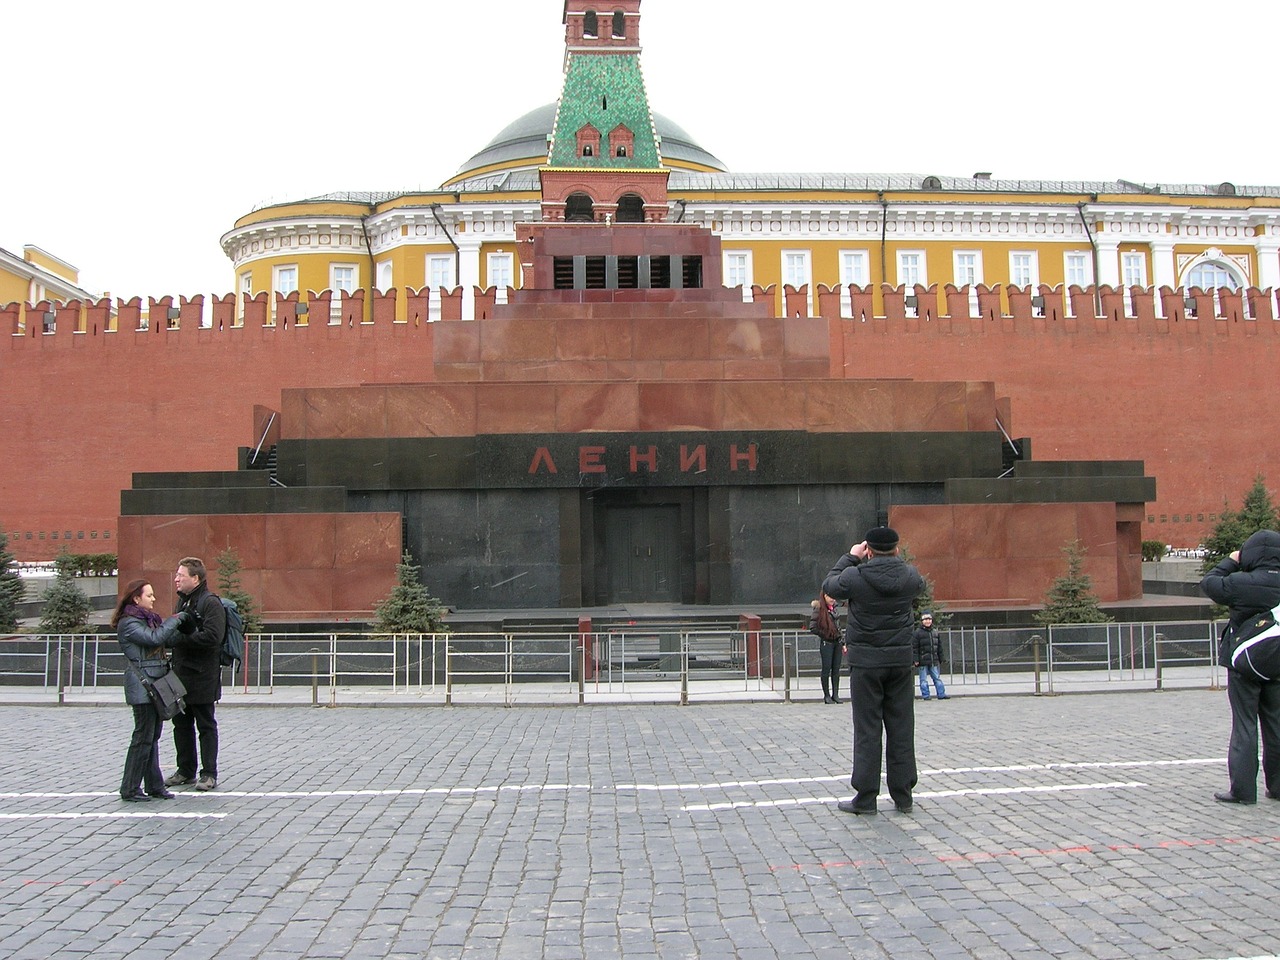 Обчистить мавзолей: в Москве пытались похитить тело Ленина